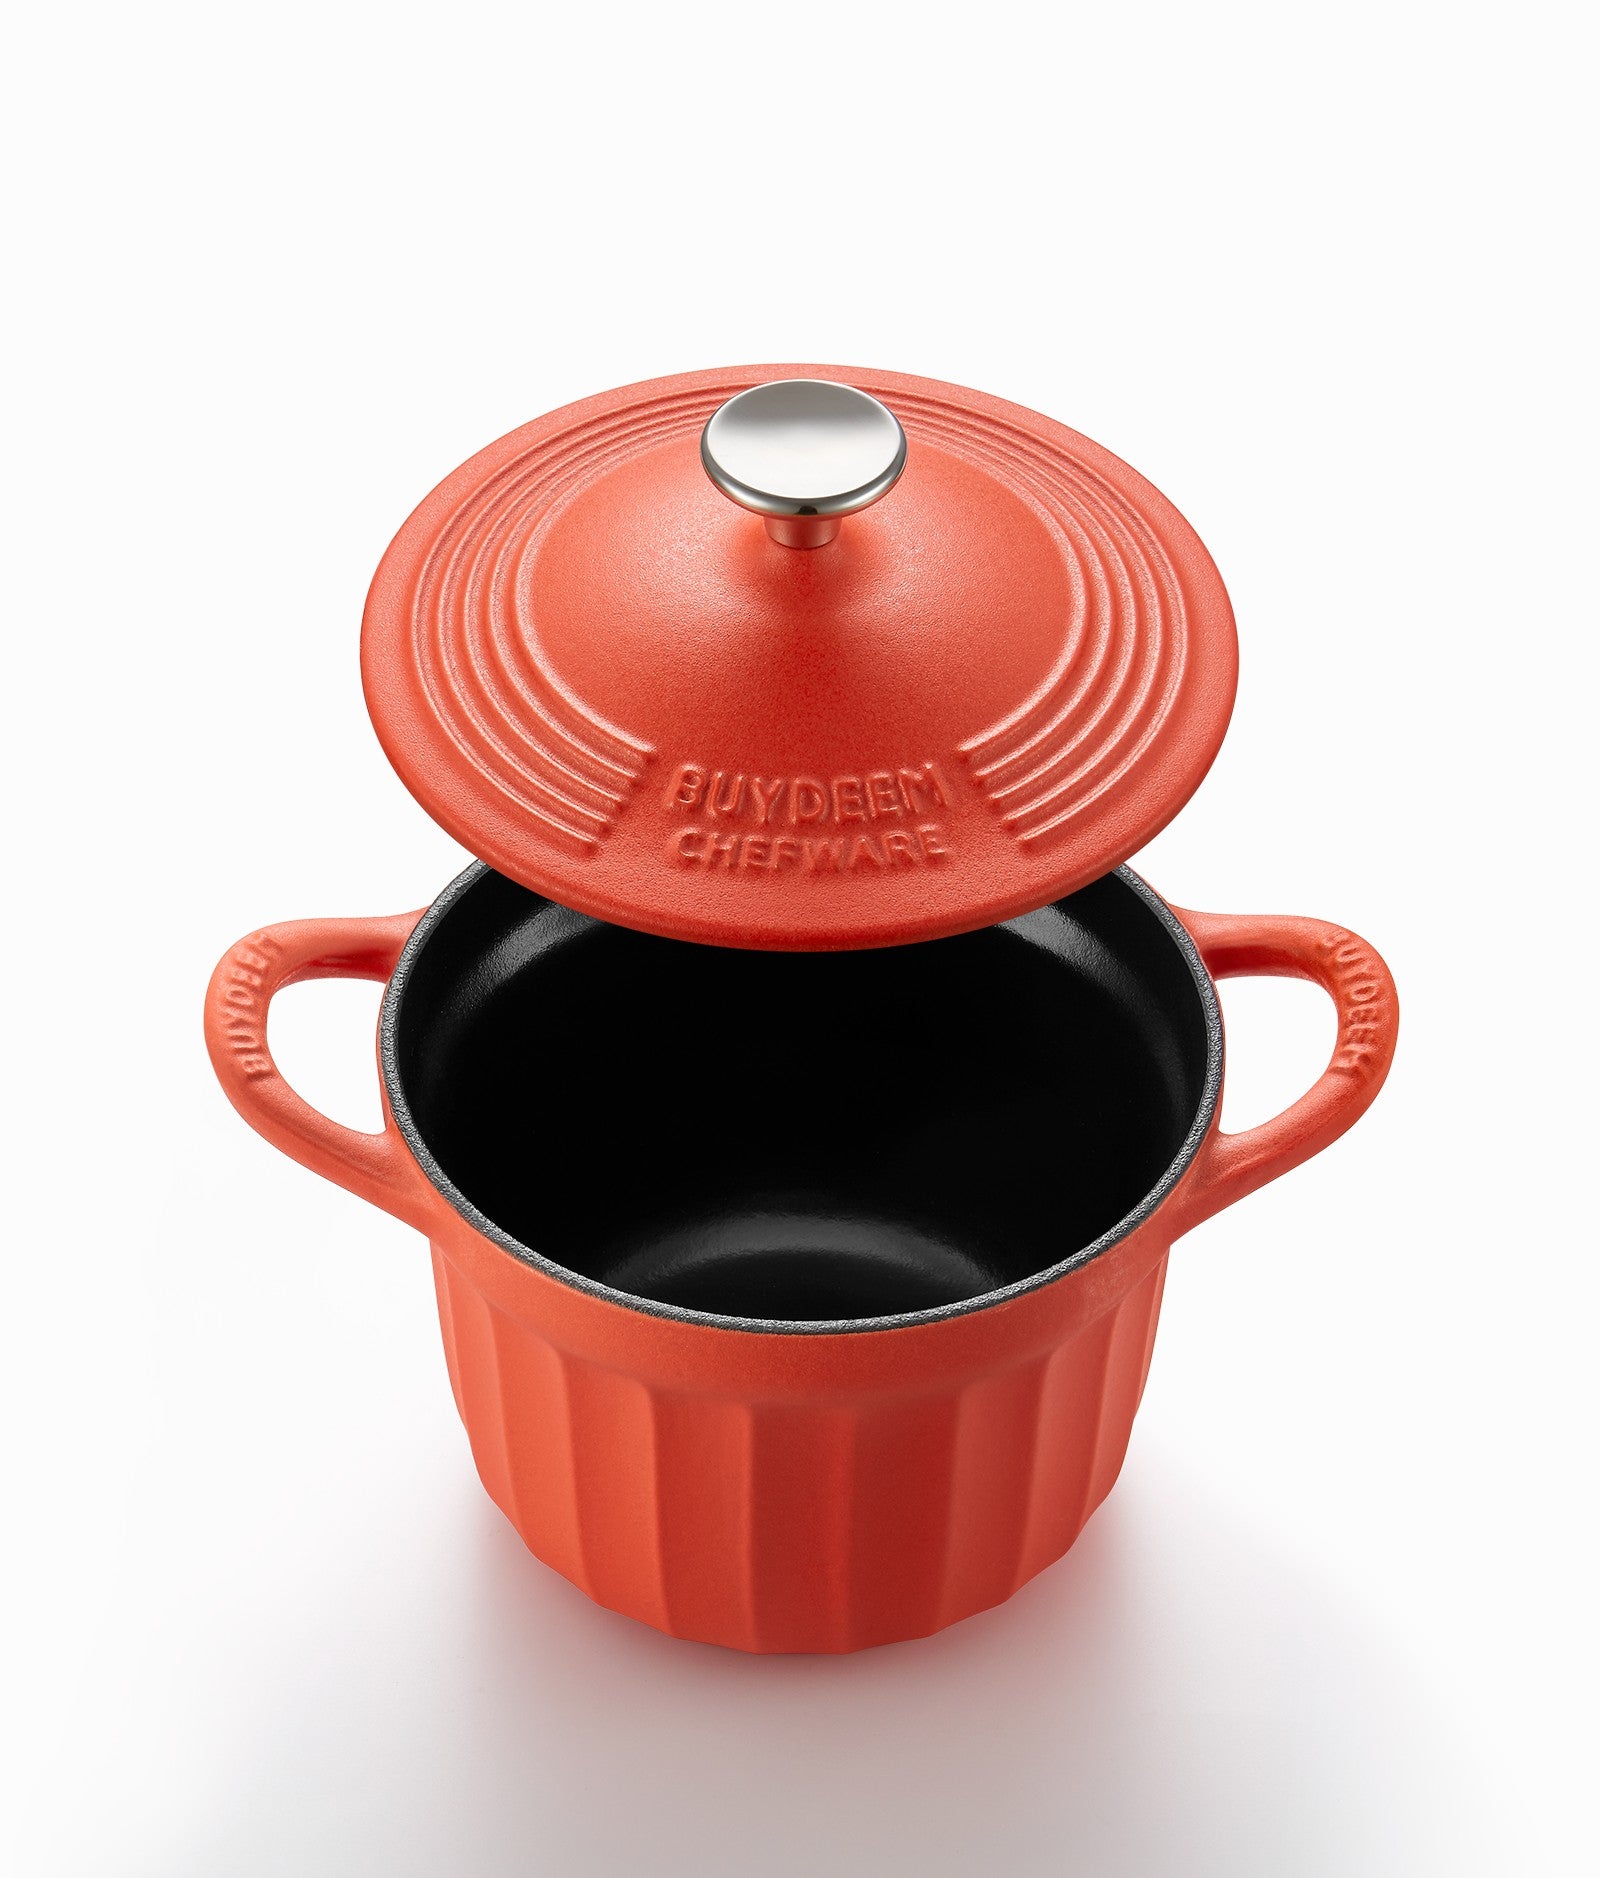 https://us.buydeem.com/cdn/shop/products/Buydeem-Cast-Iron-Soup---Rice-Pot---1.9-Quart-Dutch-Oven-CP541-BuydeemUS-1657511214.jpg?v=1660893512